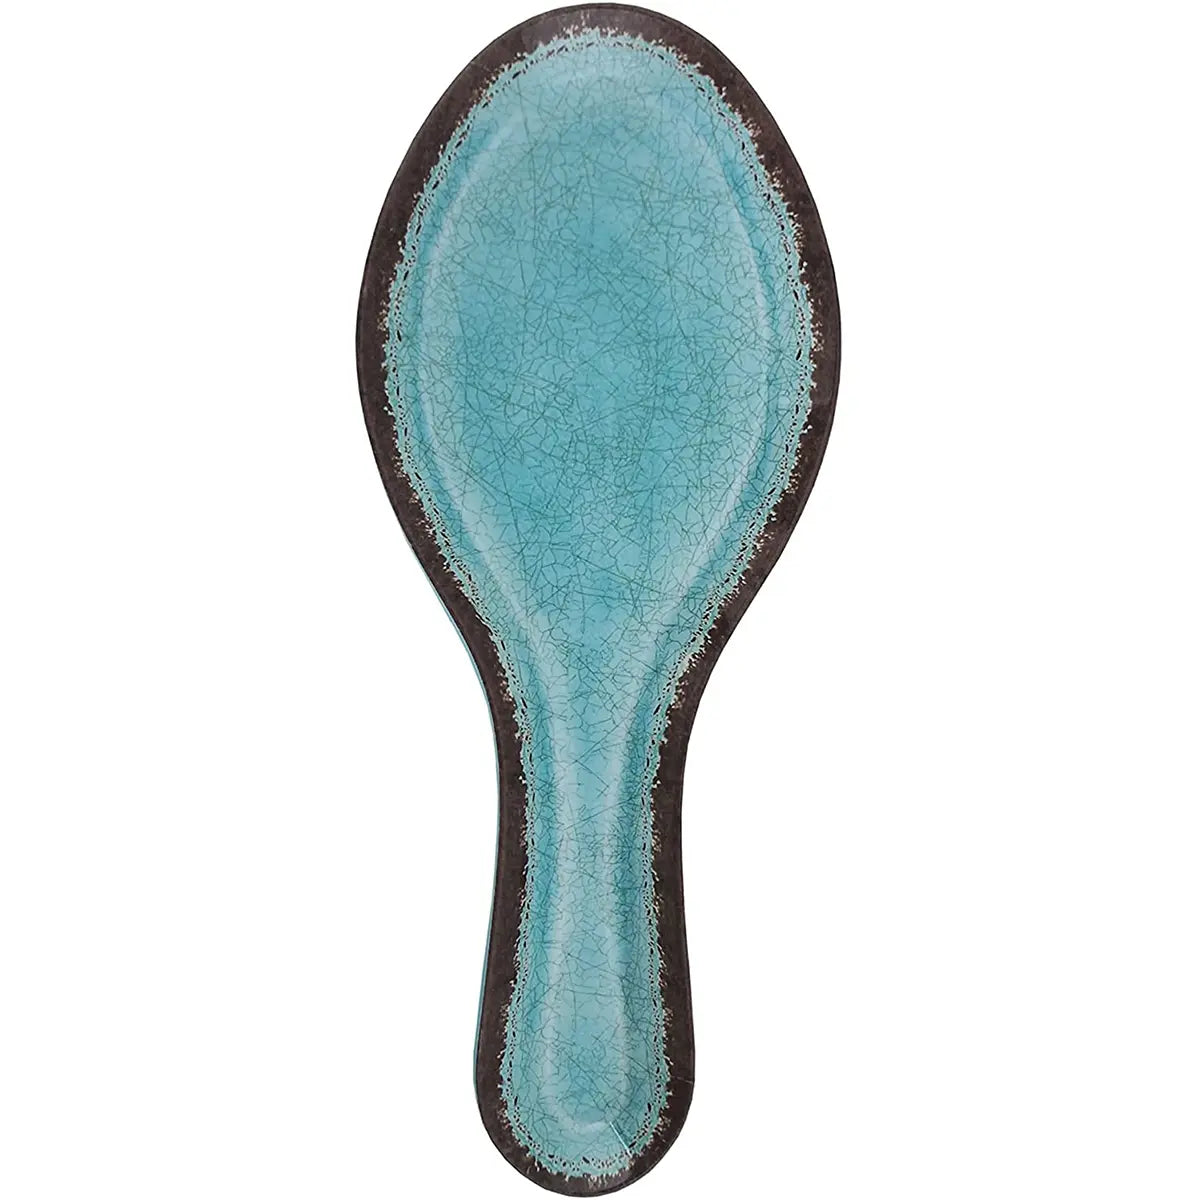 Le Cadeaux Antiqua Turquoise Spoon Rest  